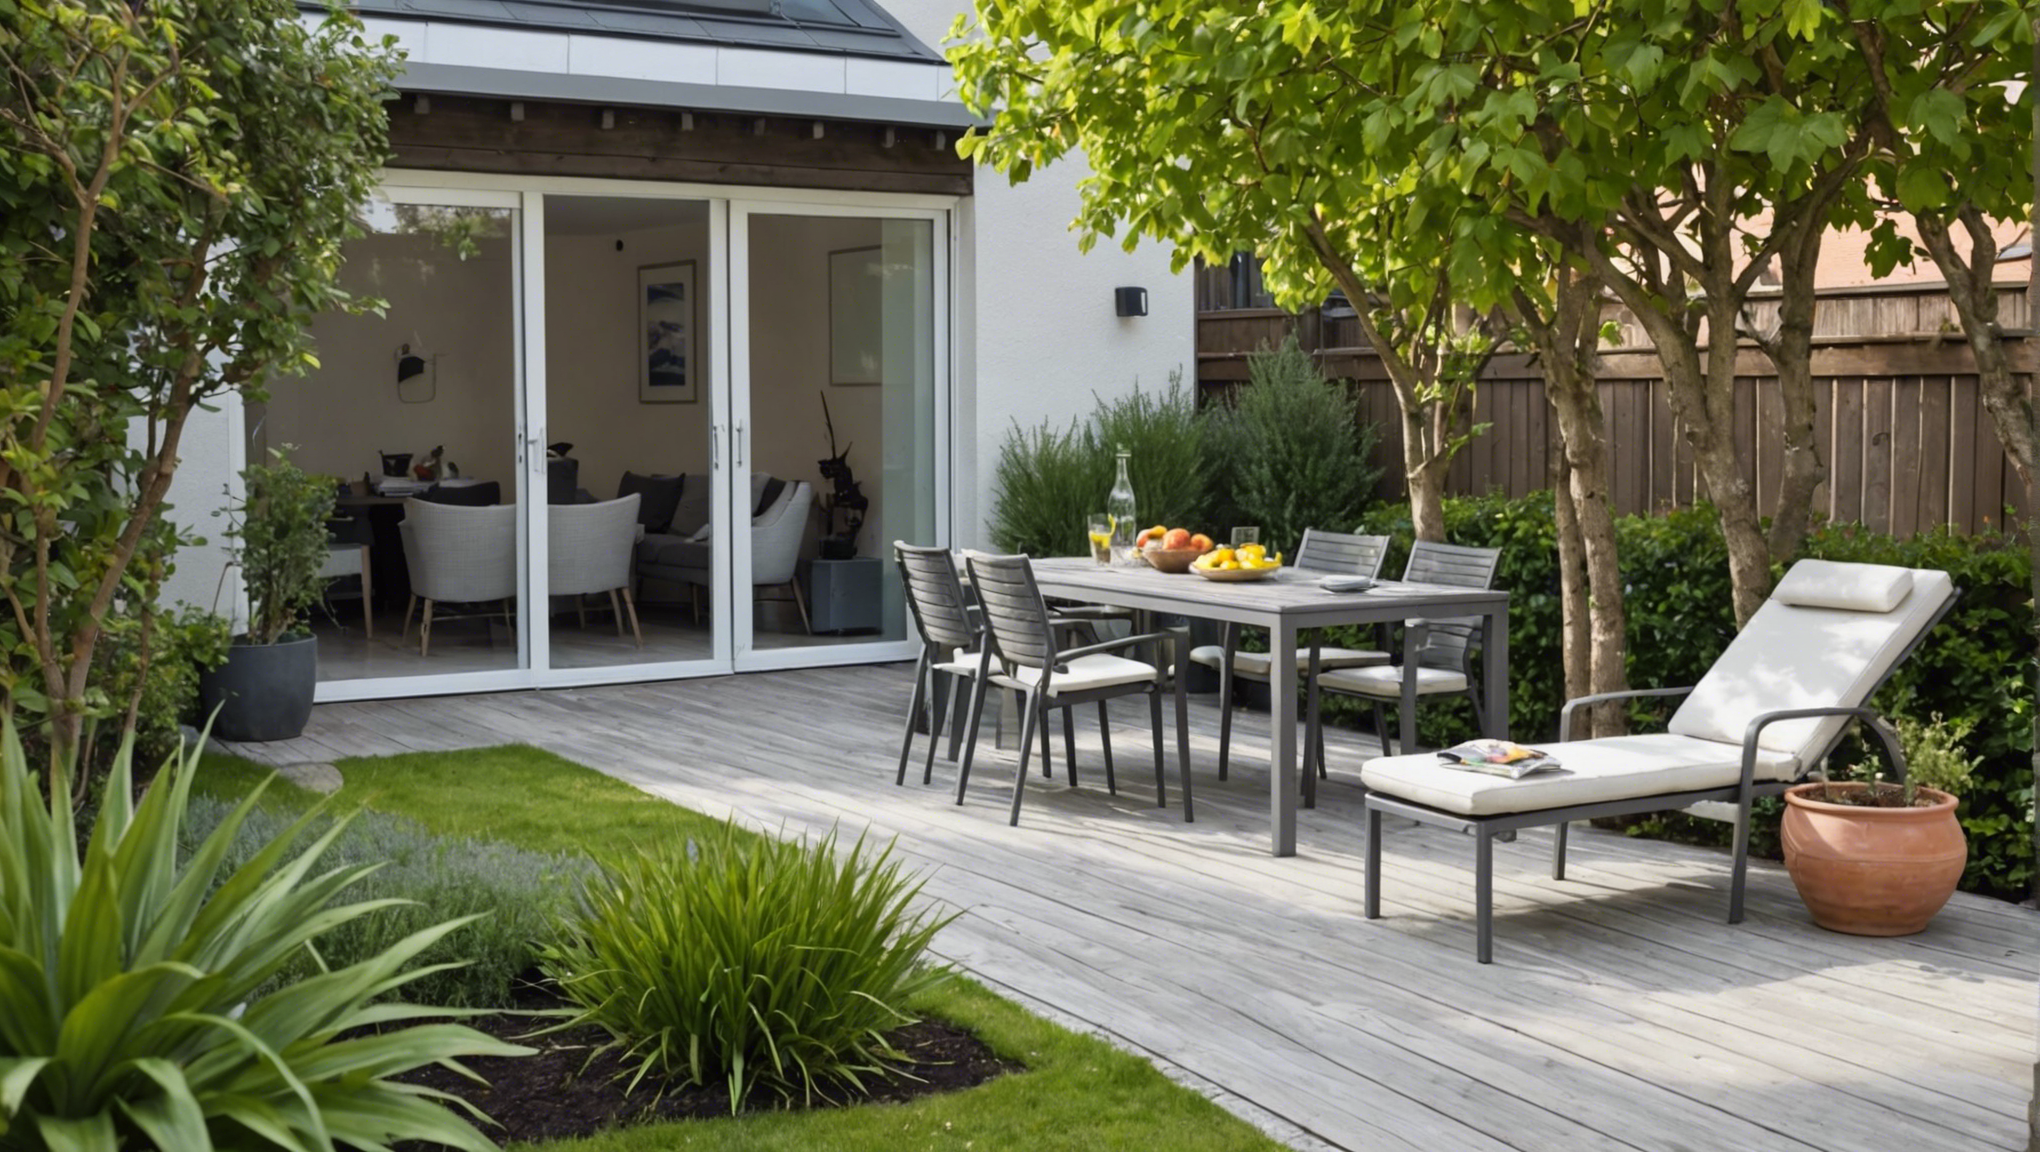 découvrez nos conseils pour aménager un jardin devant votre maison avec une magnifique terrasse. des idées d'aménagement, de décoration et d'agencement pour créer un espace extérieur convivial et esthétique.